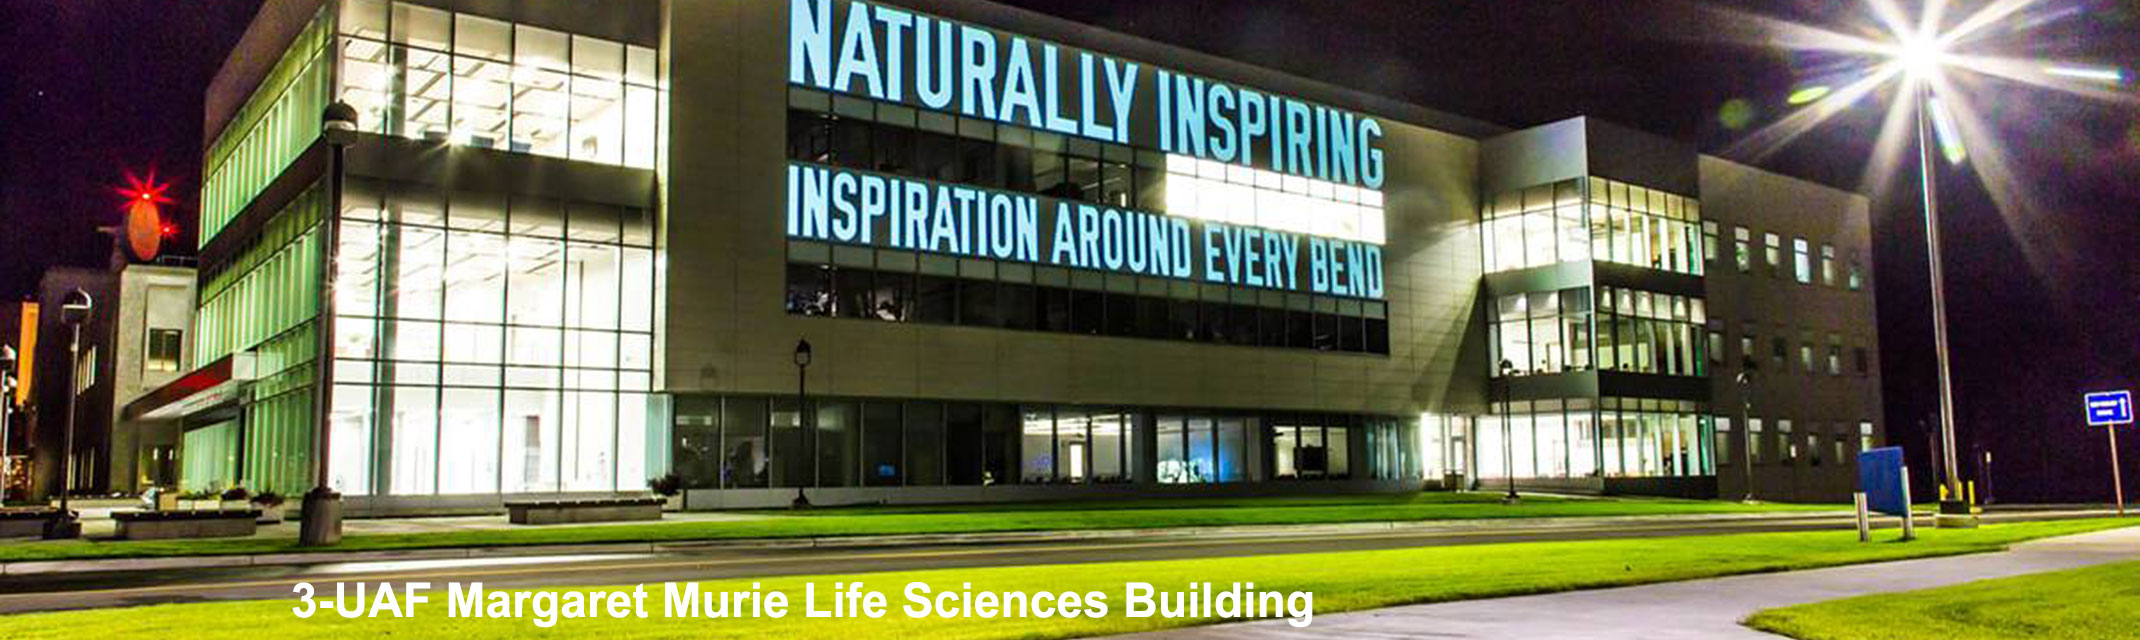 UAF Margaret Murie Life Sciences Building